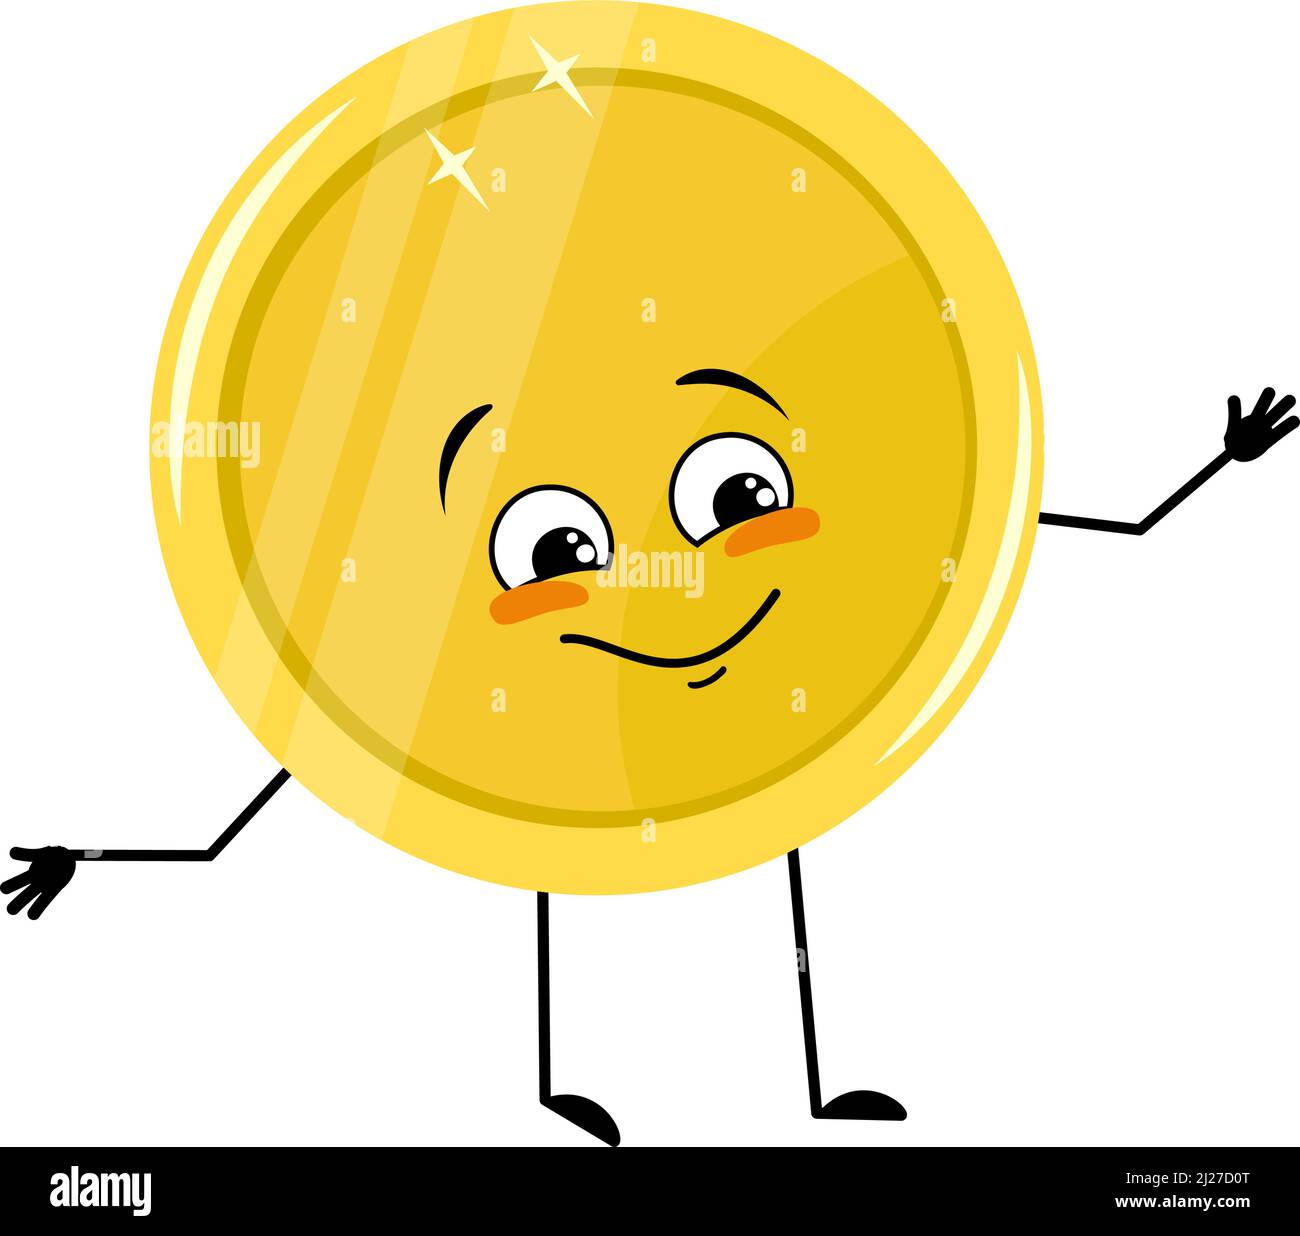 Niedlicher goldener Münzcharakter mit fröhlicher Emotion, fröhlichem Gesicht, lächelnden Augen, Armen und Beinen. Geldmensch mit witzigem Ausdruck und Pose. Vektorgrafik flach Stock Vektor